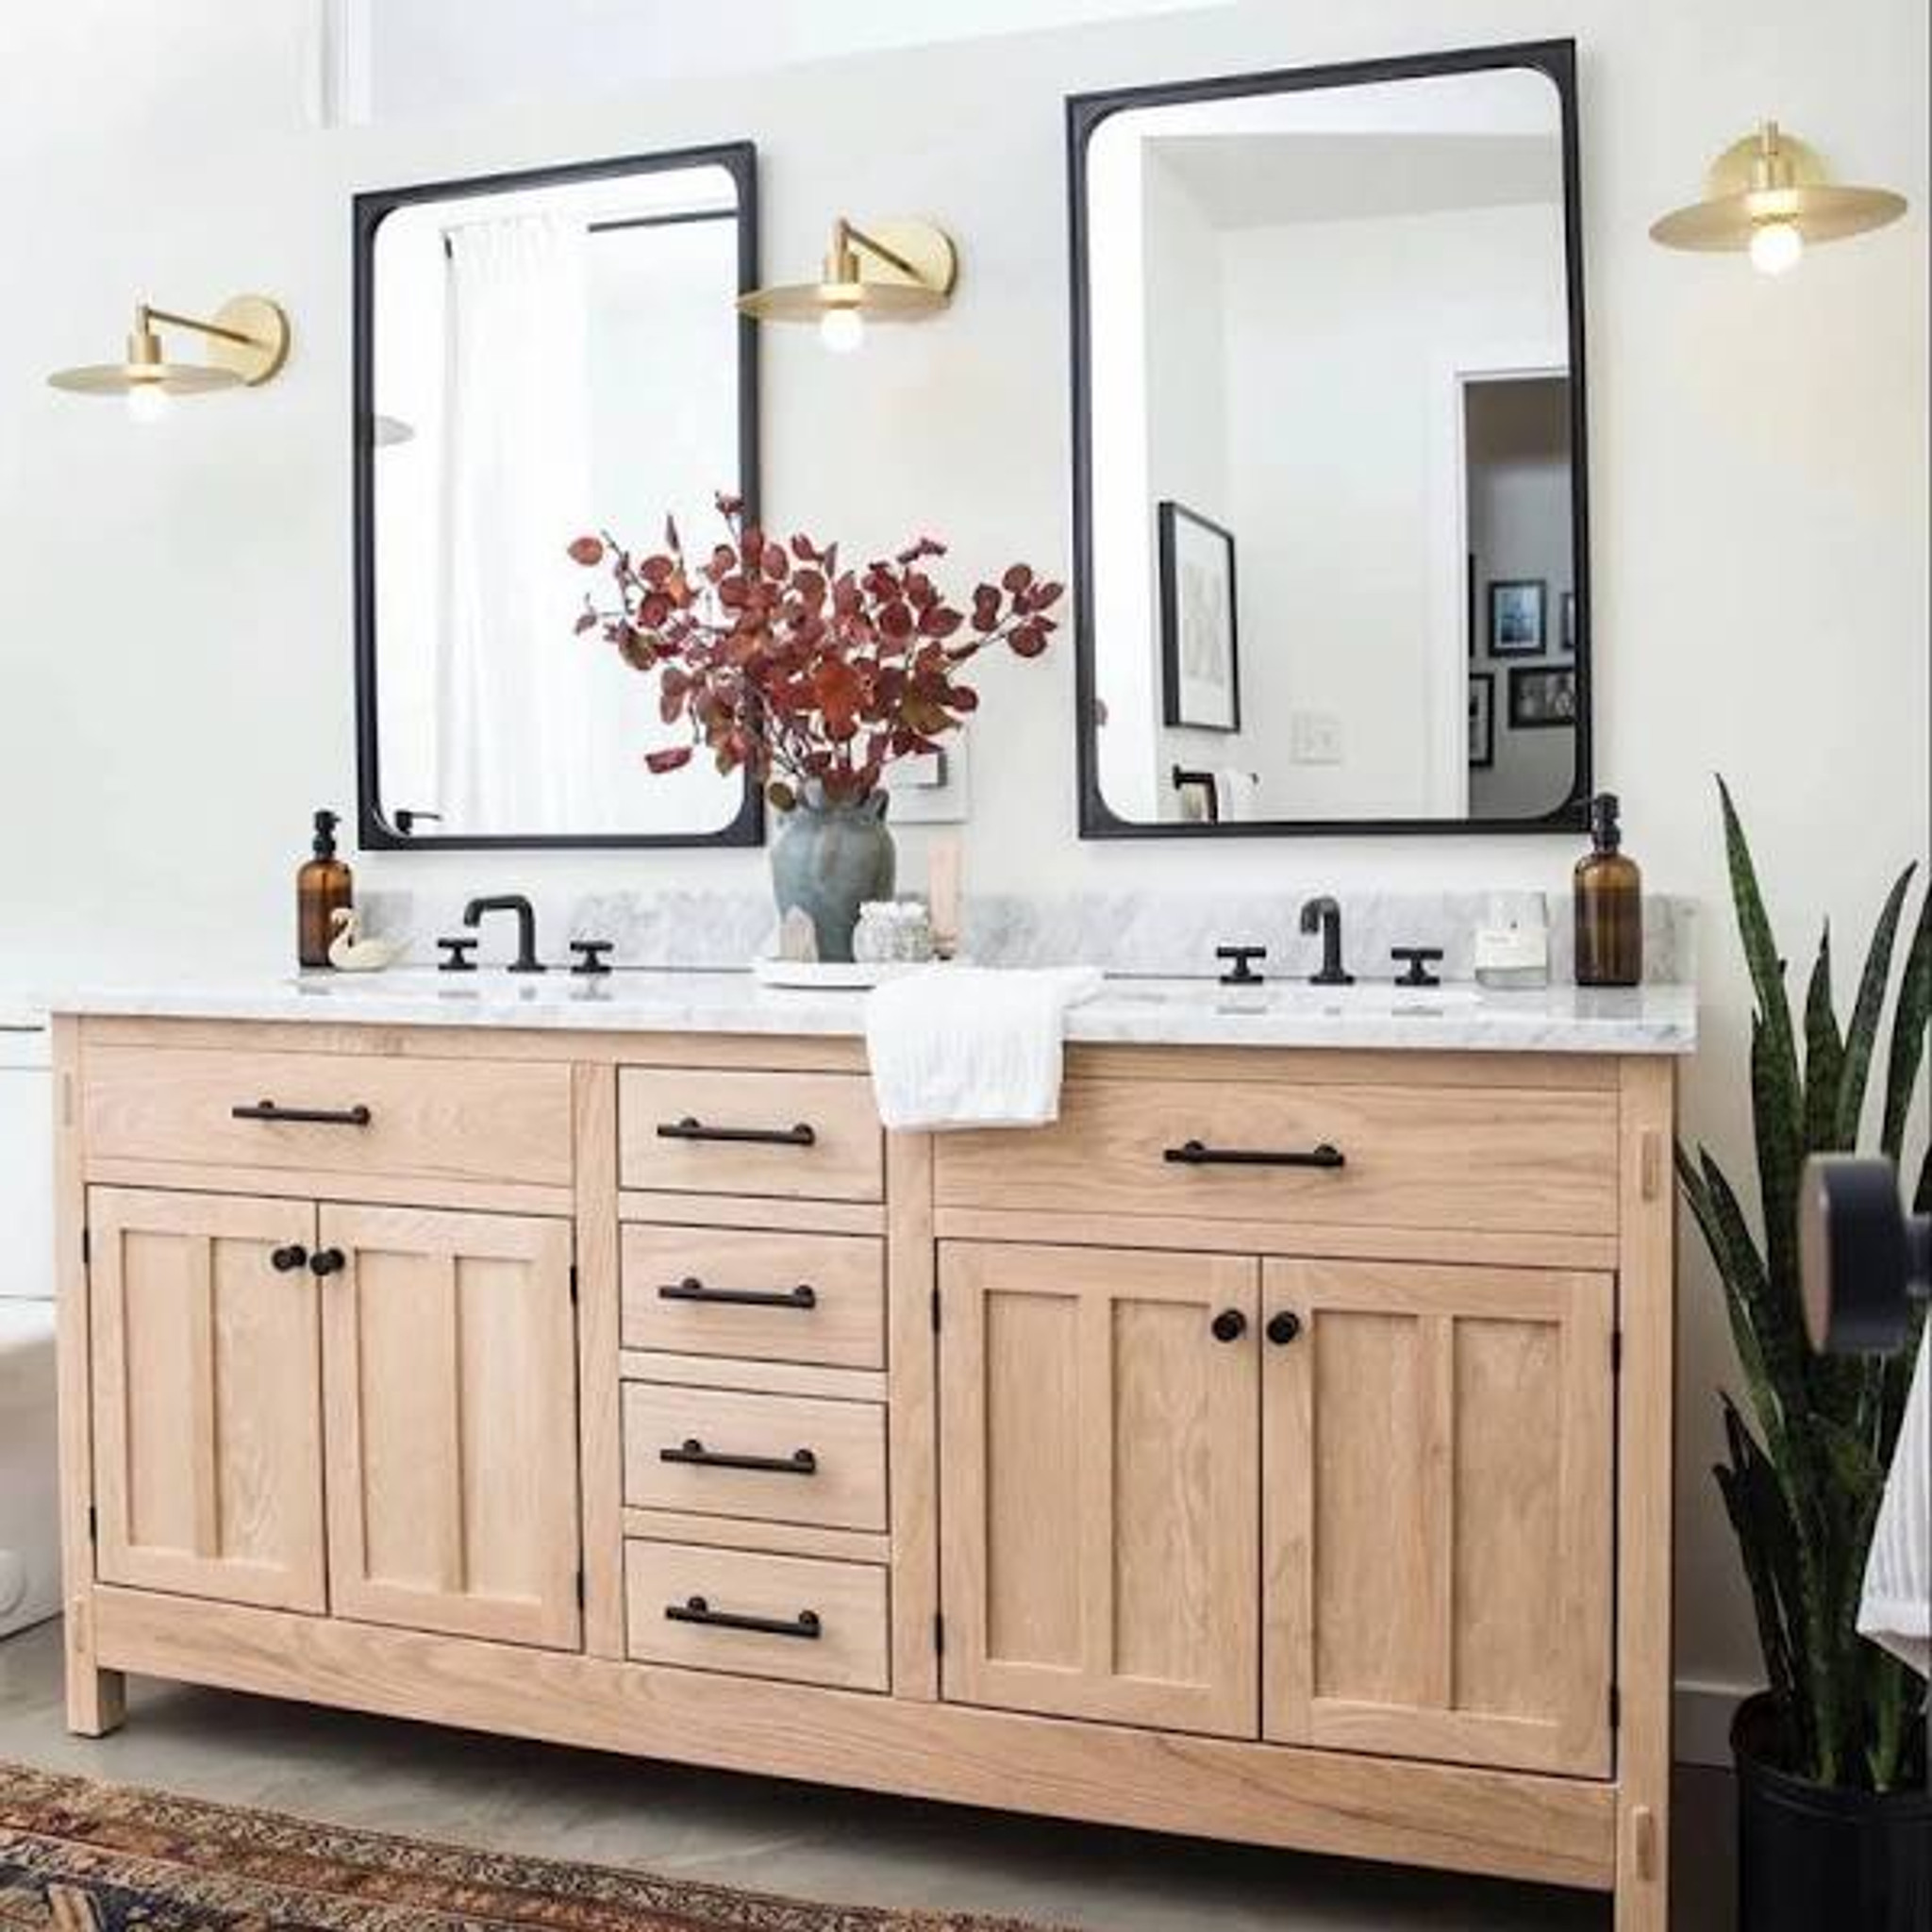 renwil sorella black wood rounded corners bathroom vanity mirror modern